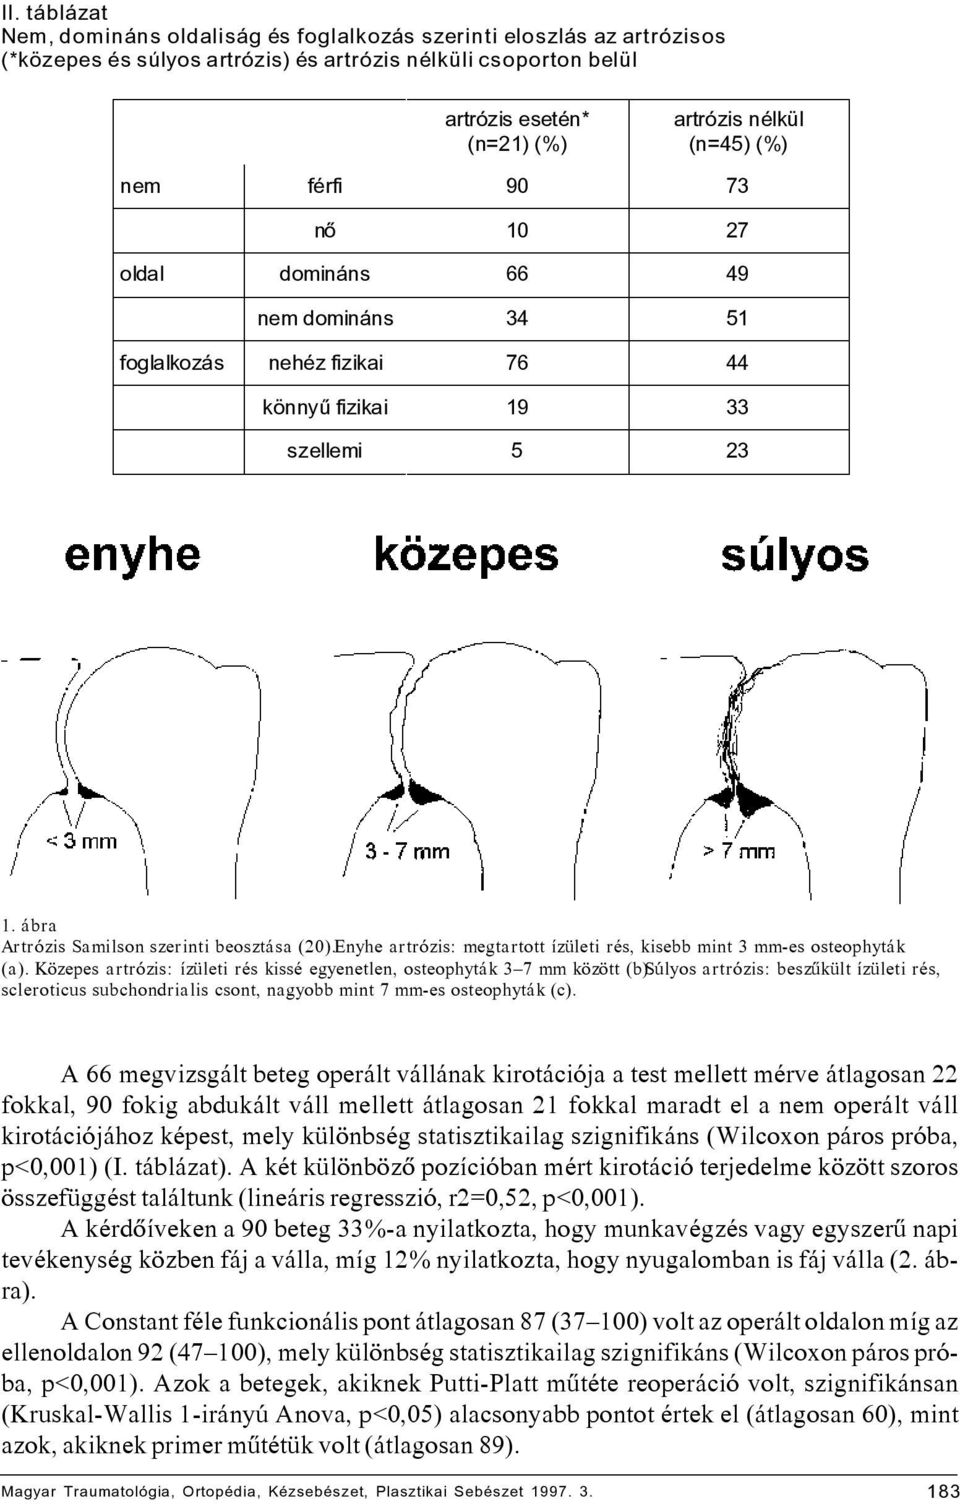 Enyhe artrózis: megtartott ízületi rés, kisebb mint 3 mm-es osteophyták (a). Közepes artrózis: ízületi rés kissé egyenetlen, osteophyták 3 7 mm között (b).